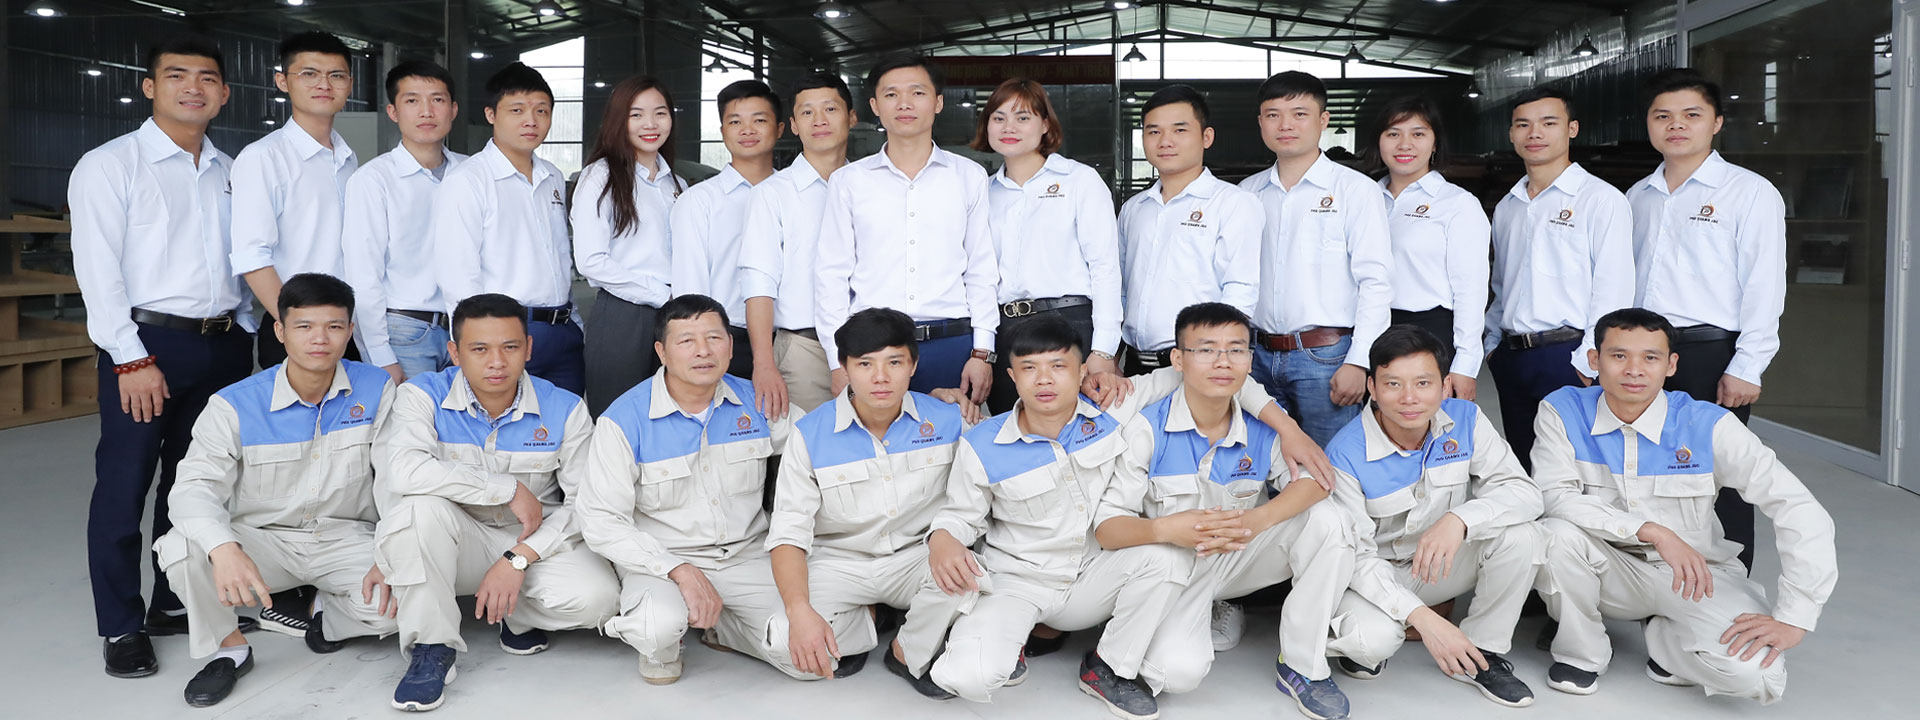 Công nhân viên nội thất Phú Quang